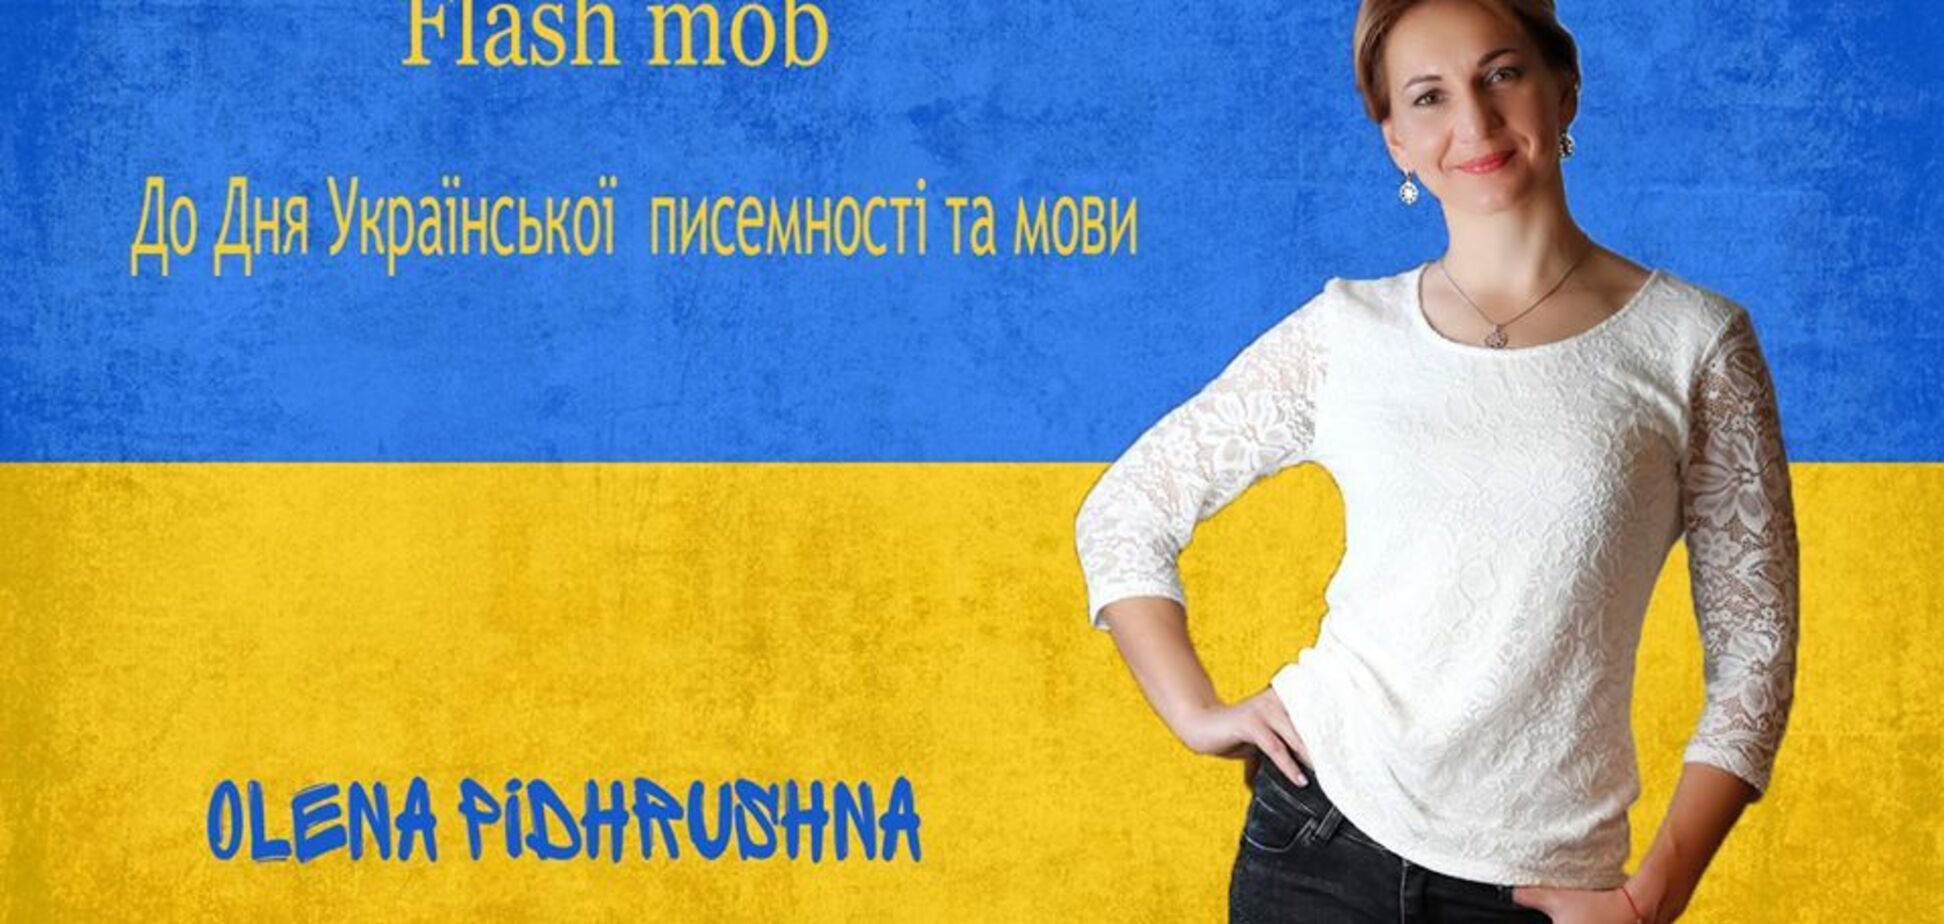 Биатлонисты сборной восхитили сеть украинским флешмобом